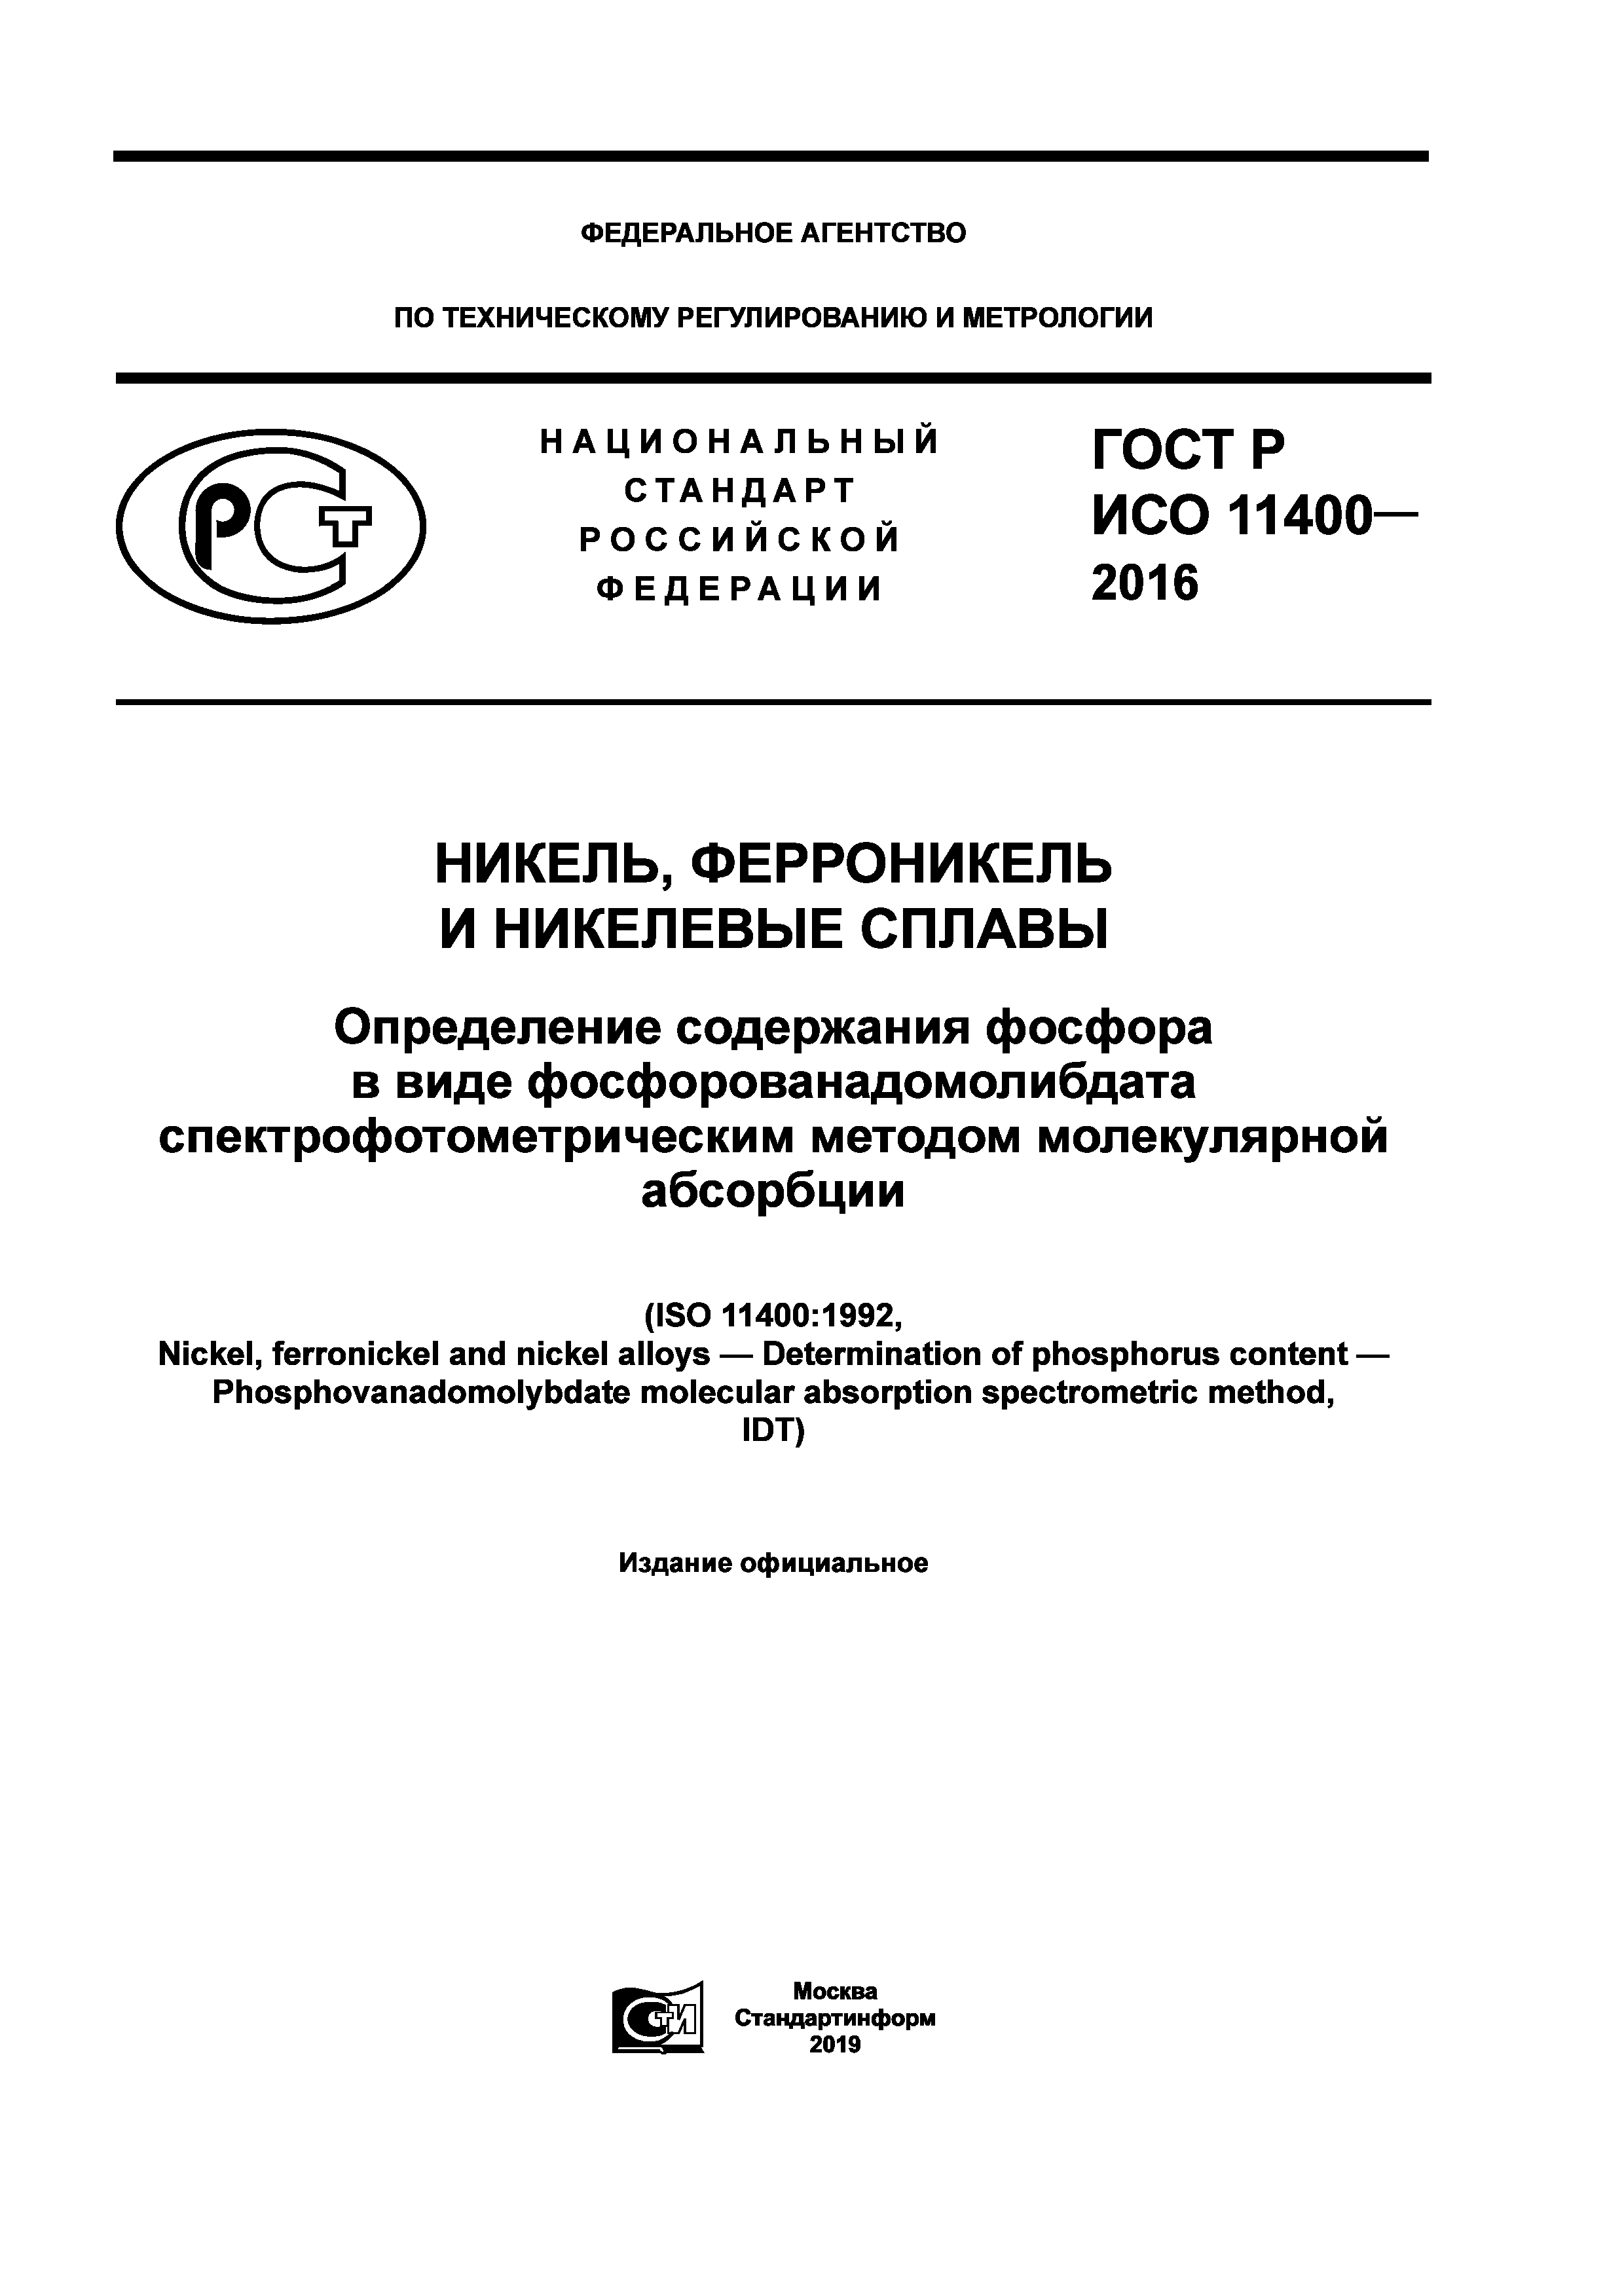 ГОСТ Р ИСО 11400-2016